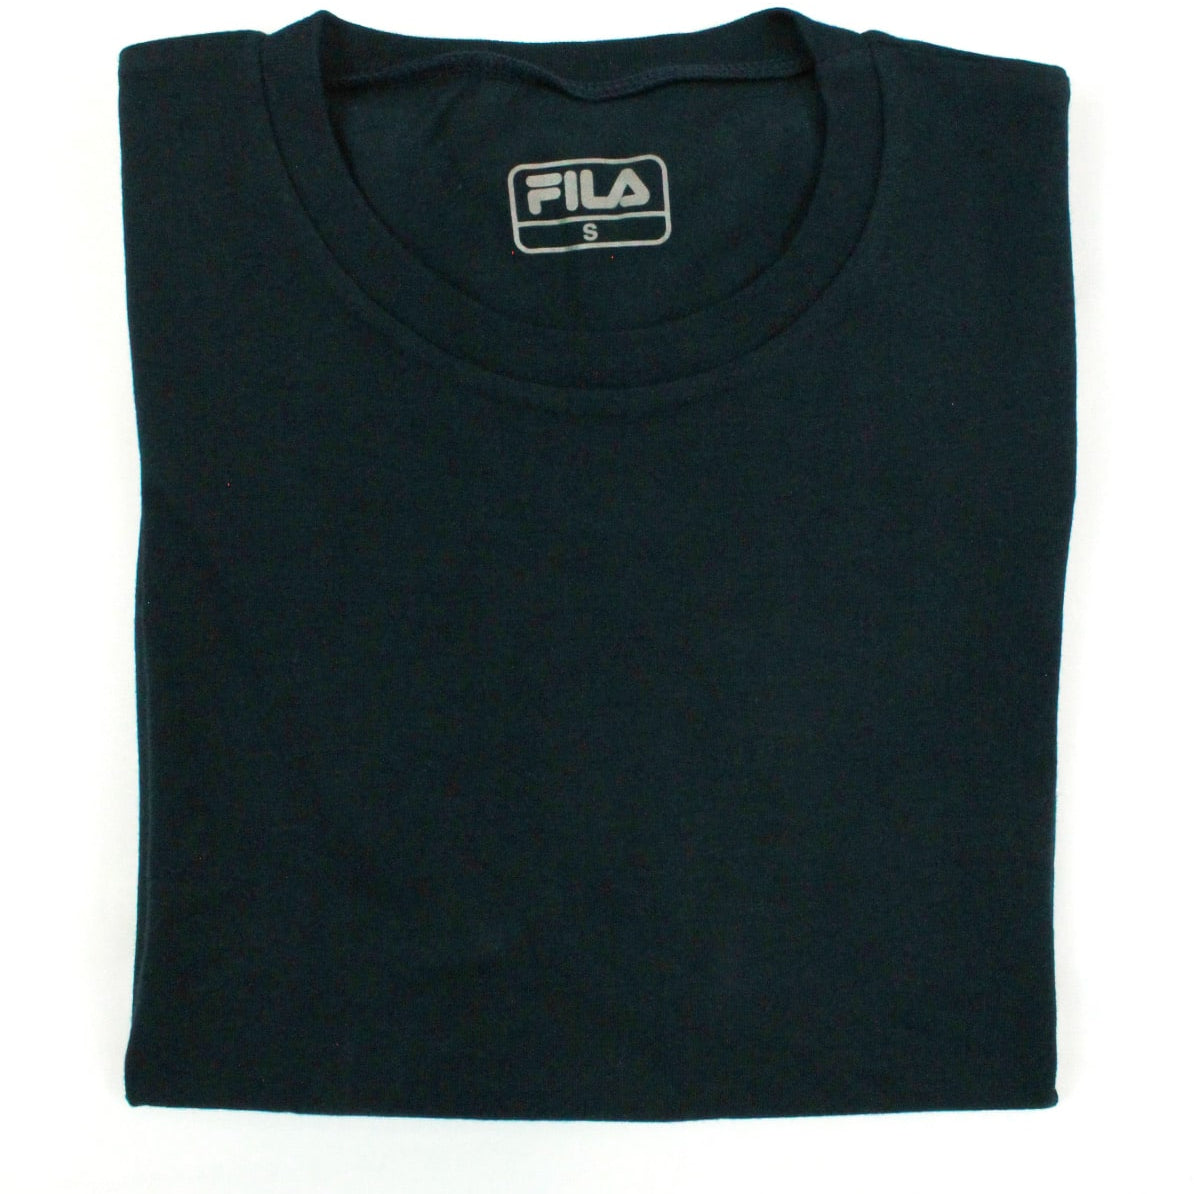 Fila 5139 bi-elastic cotton men's t-shirt - 2 pieces + colours